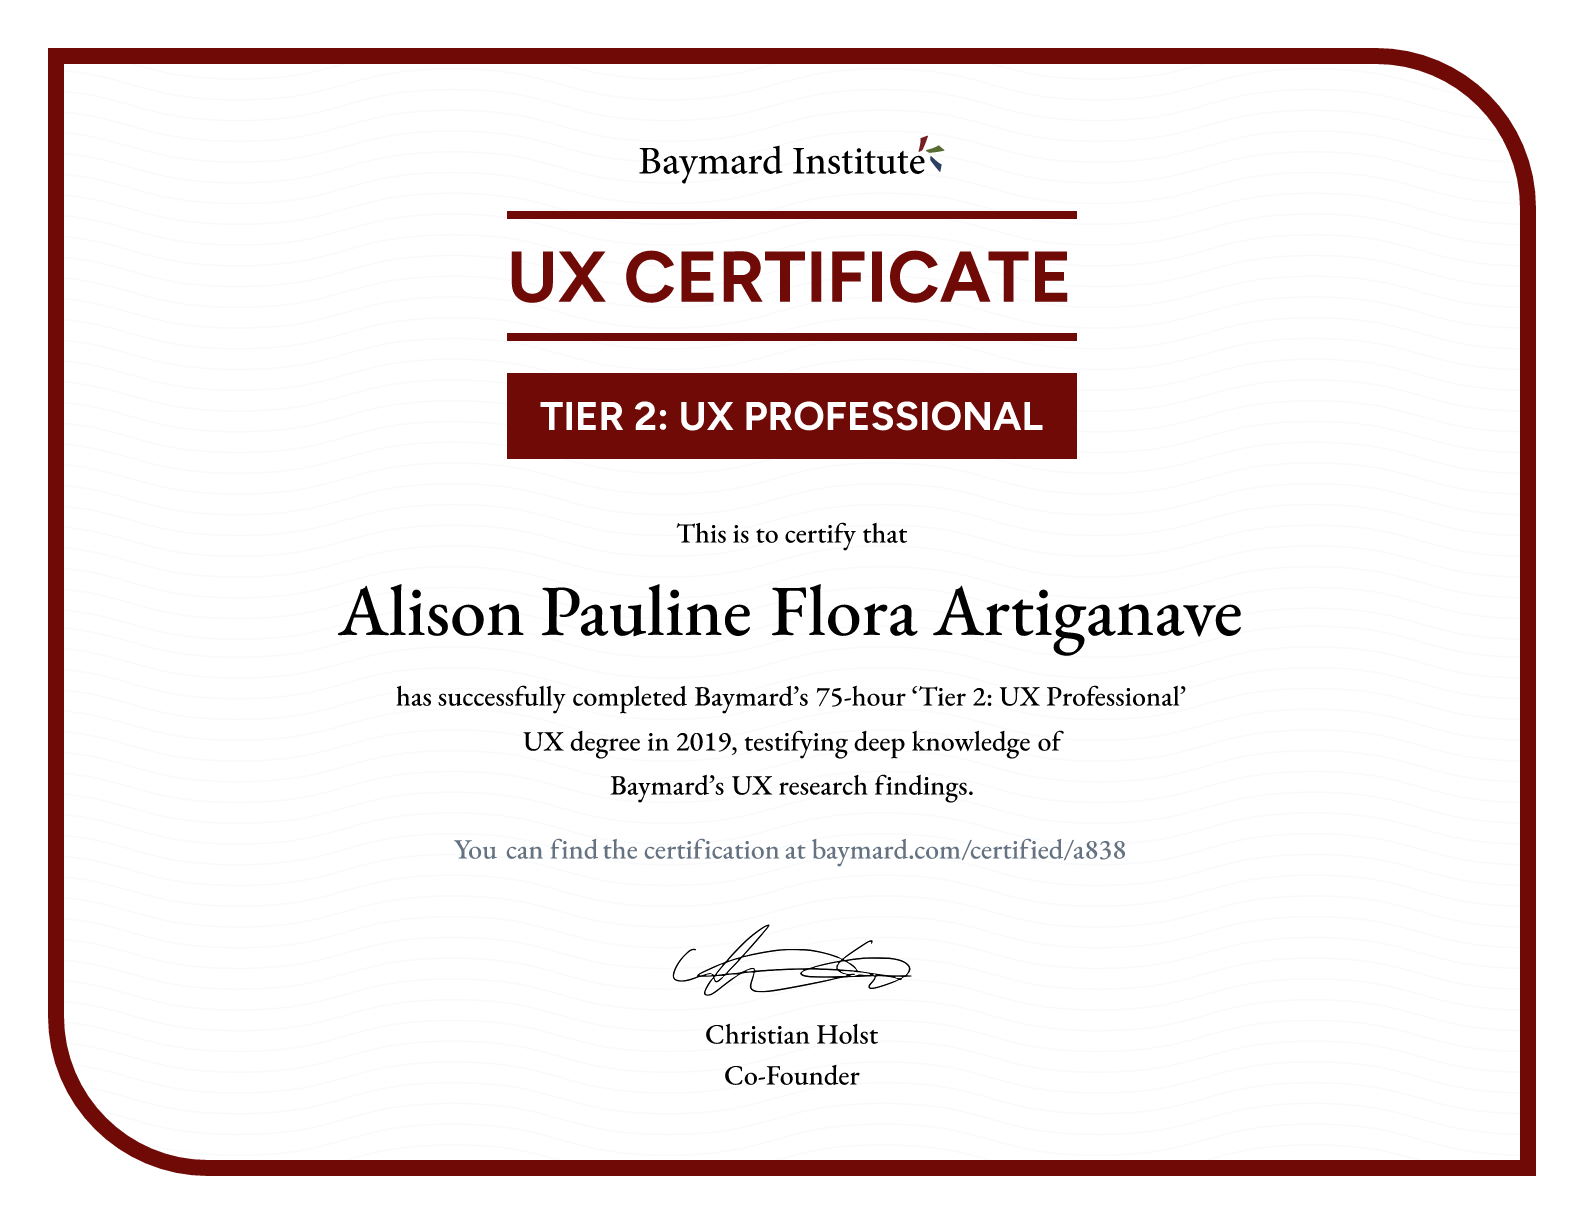 Alison Pauline Flora Artiganave’s certificate